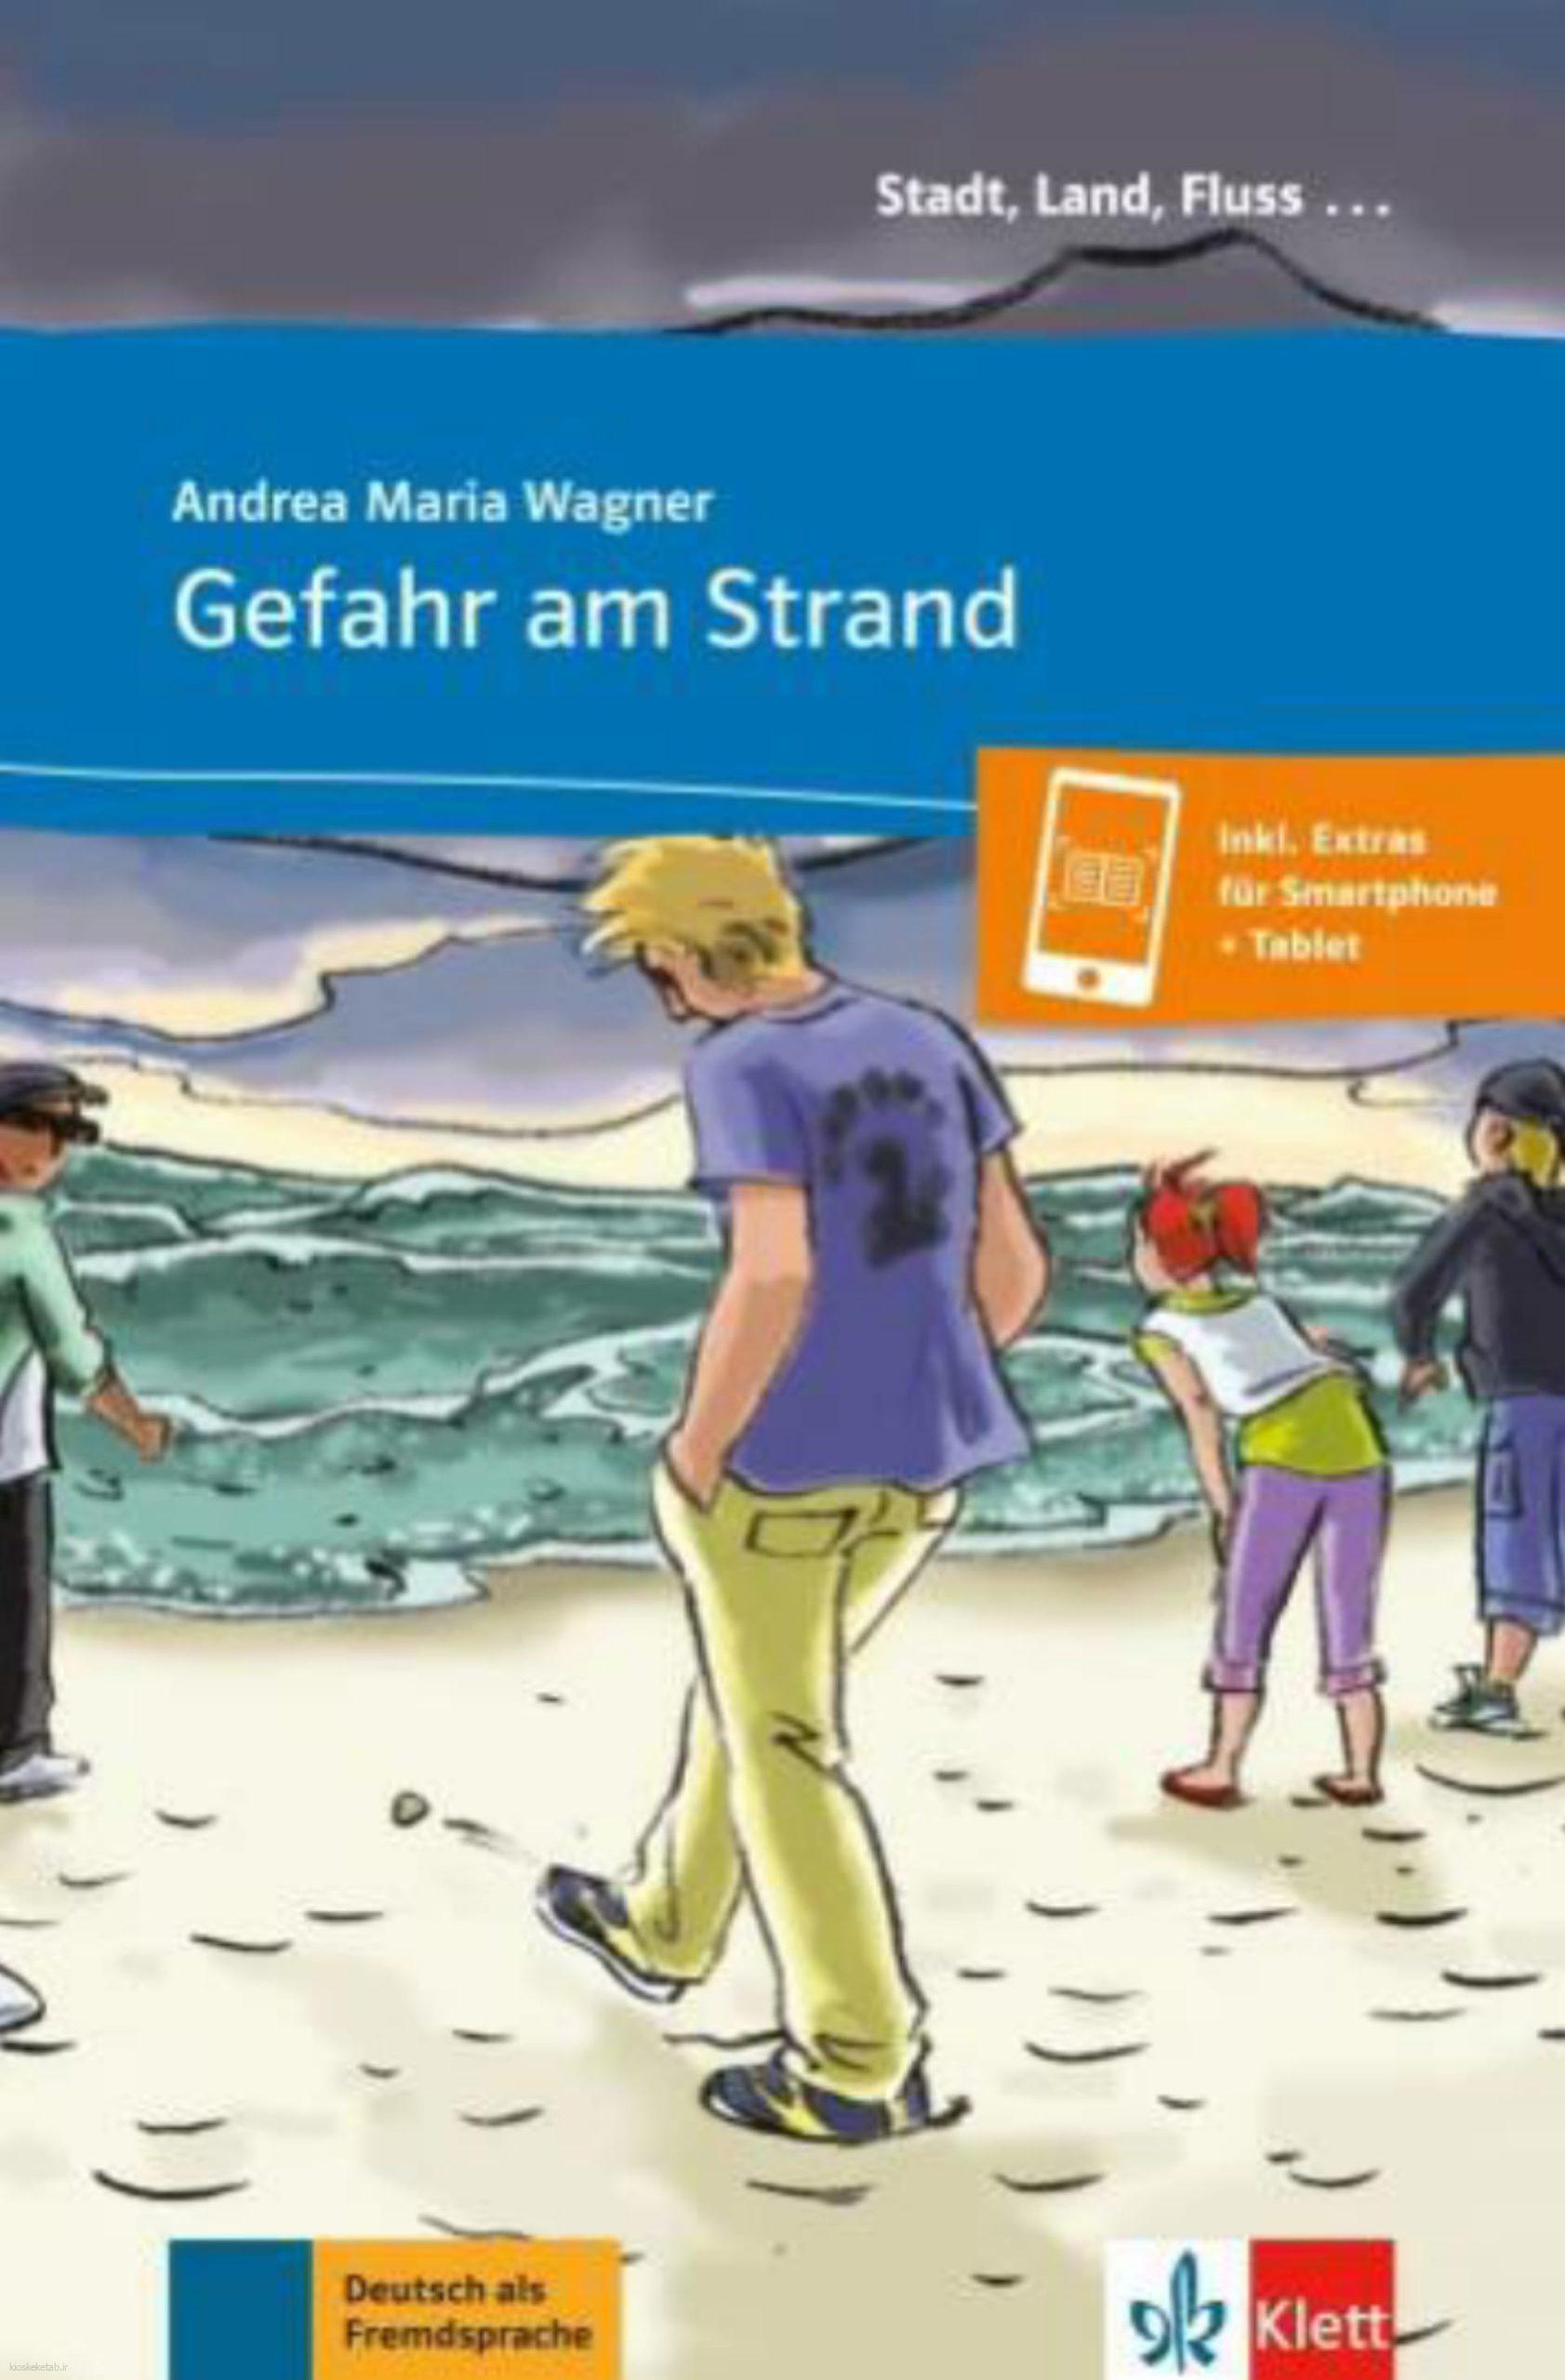 دانلود کتاب آلمانیgefahr am strand